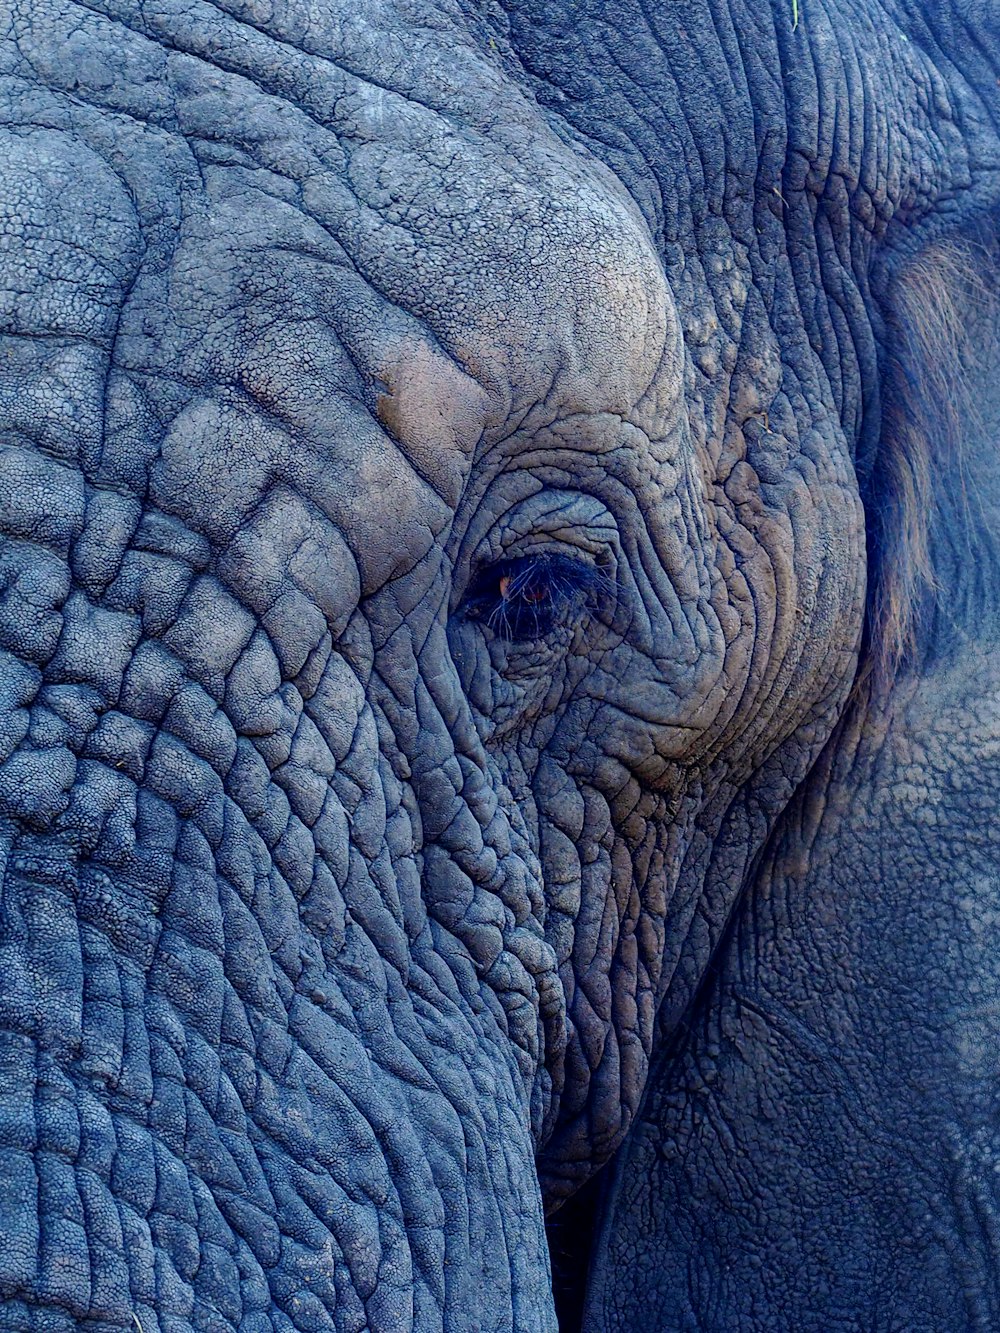 코끼리 얼굴의 접사 사진